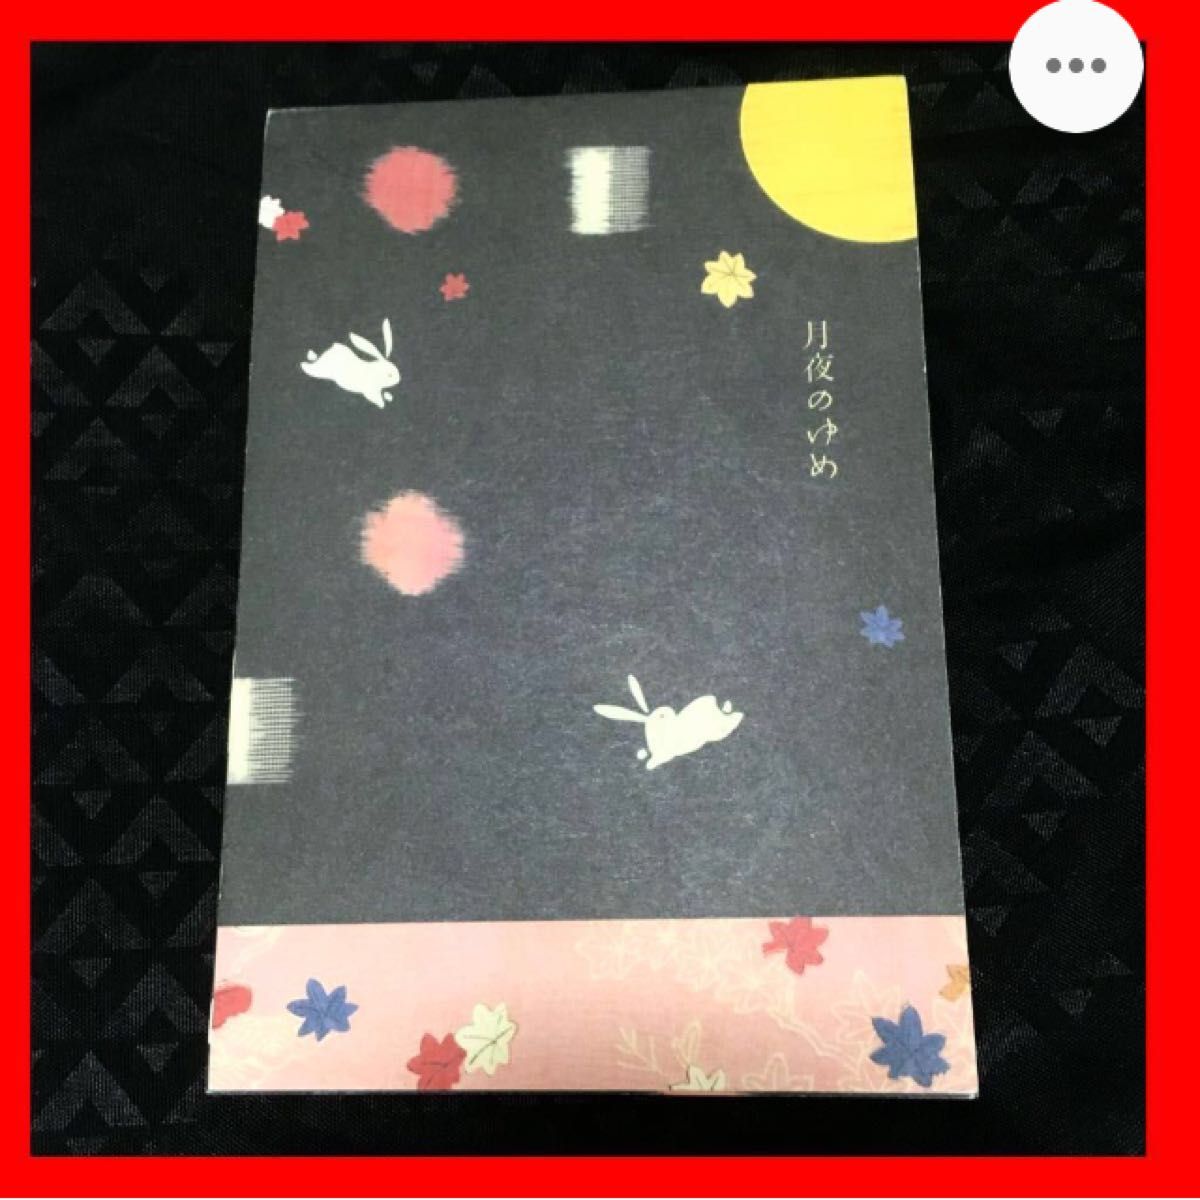 ハガキ 葉書 うさぎ 兎 月夜 月見 紅葉 post cards japan limited art 邦画 文房具 animal